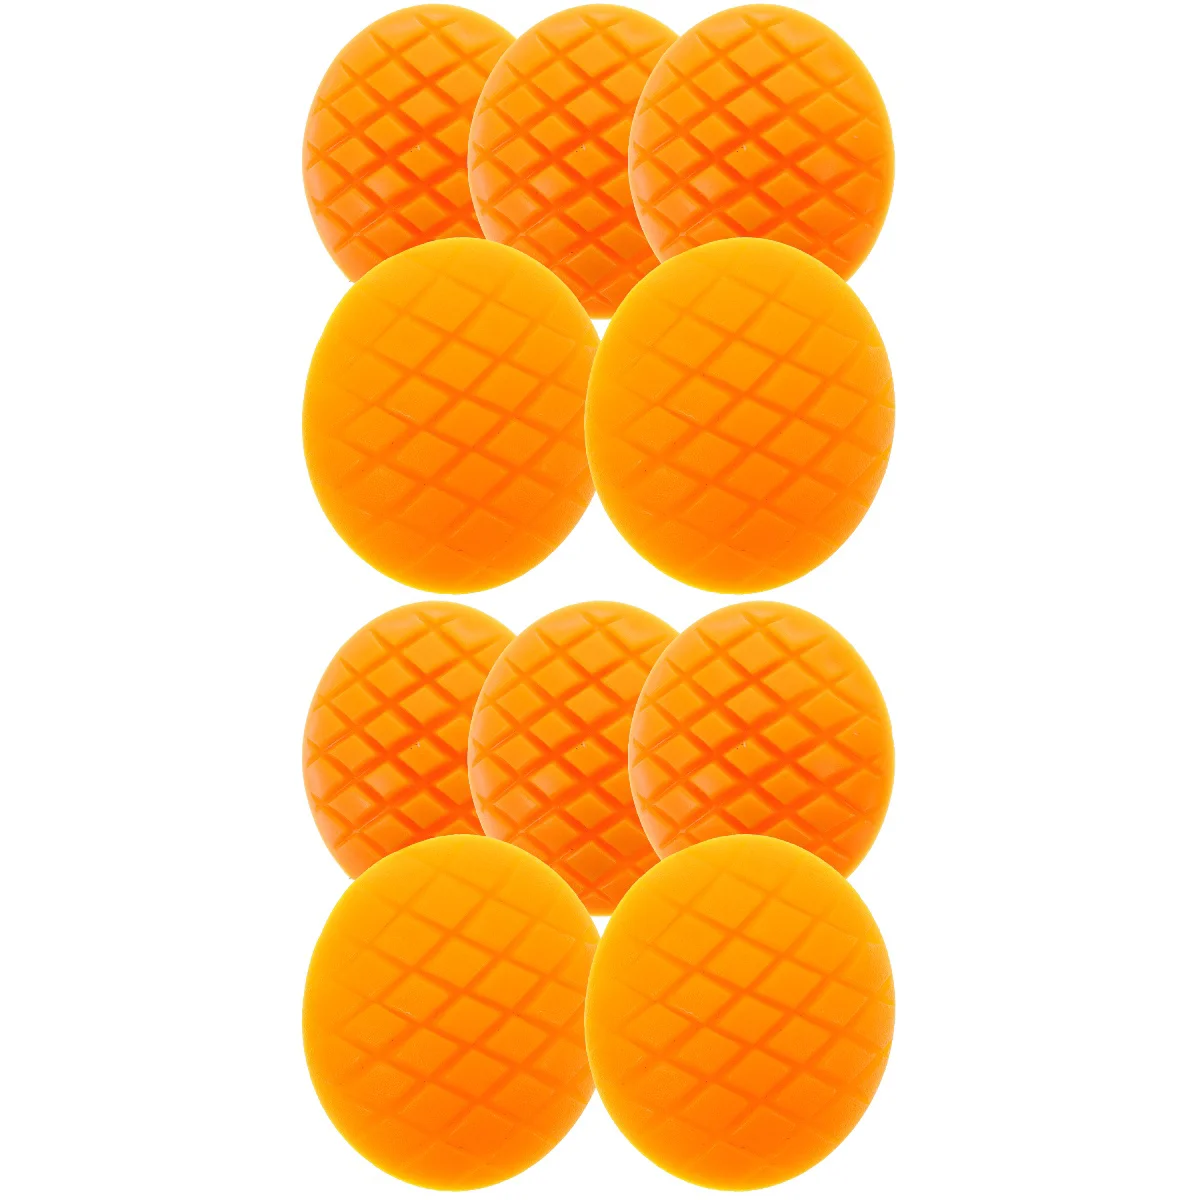 

10 шт. поддельные ломтики манго, реквизит для фотосъемки, искусственные ломтики манго, реалистичные фруктовые украшения